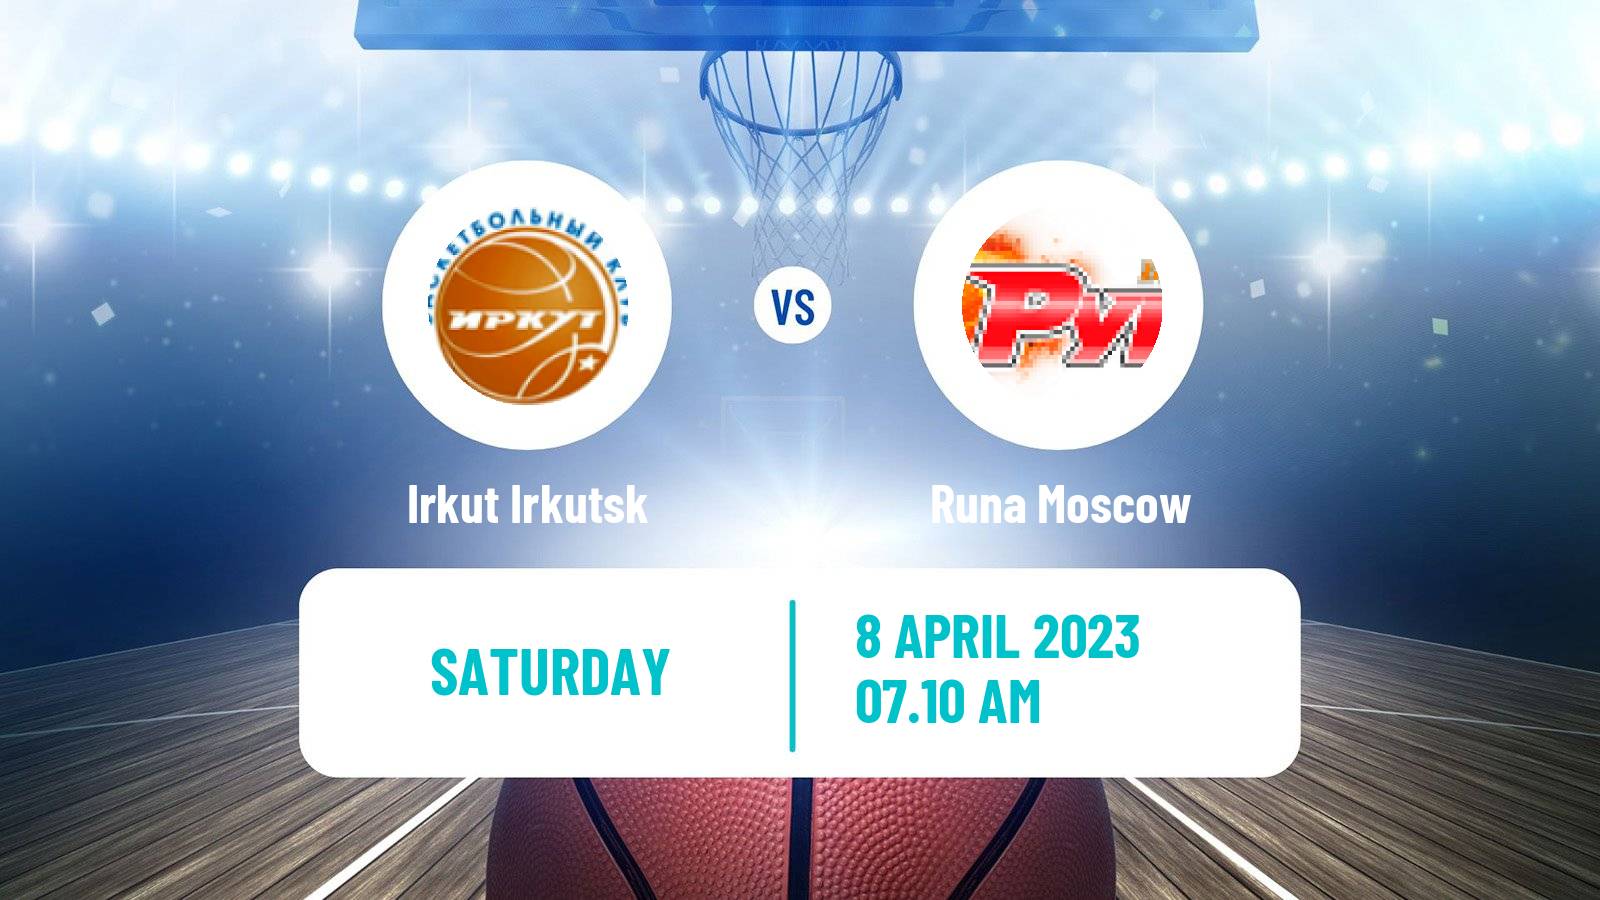 Basketball Russian Super League Basketball Irkut Irkutsk - Runa Moscow